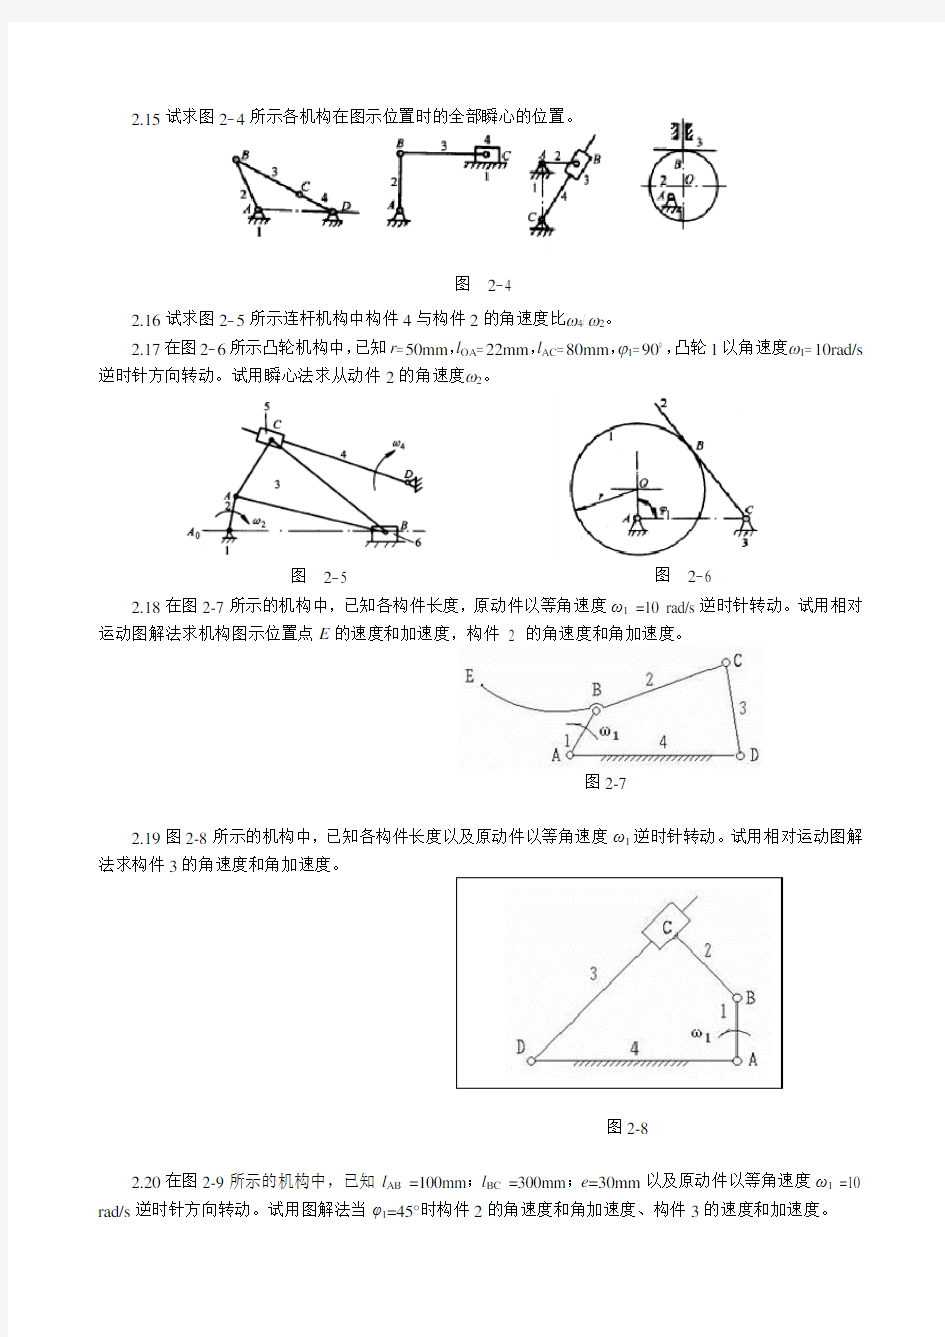 重庆大学机械原理习题集-2连杆机构